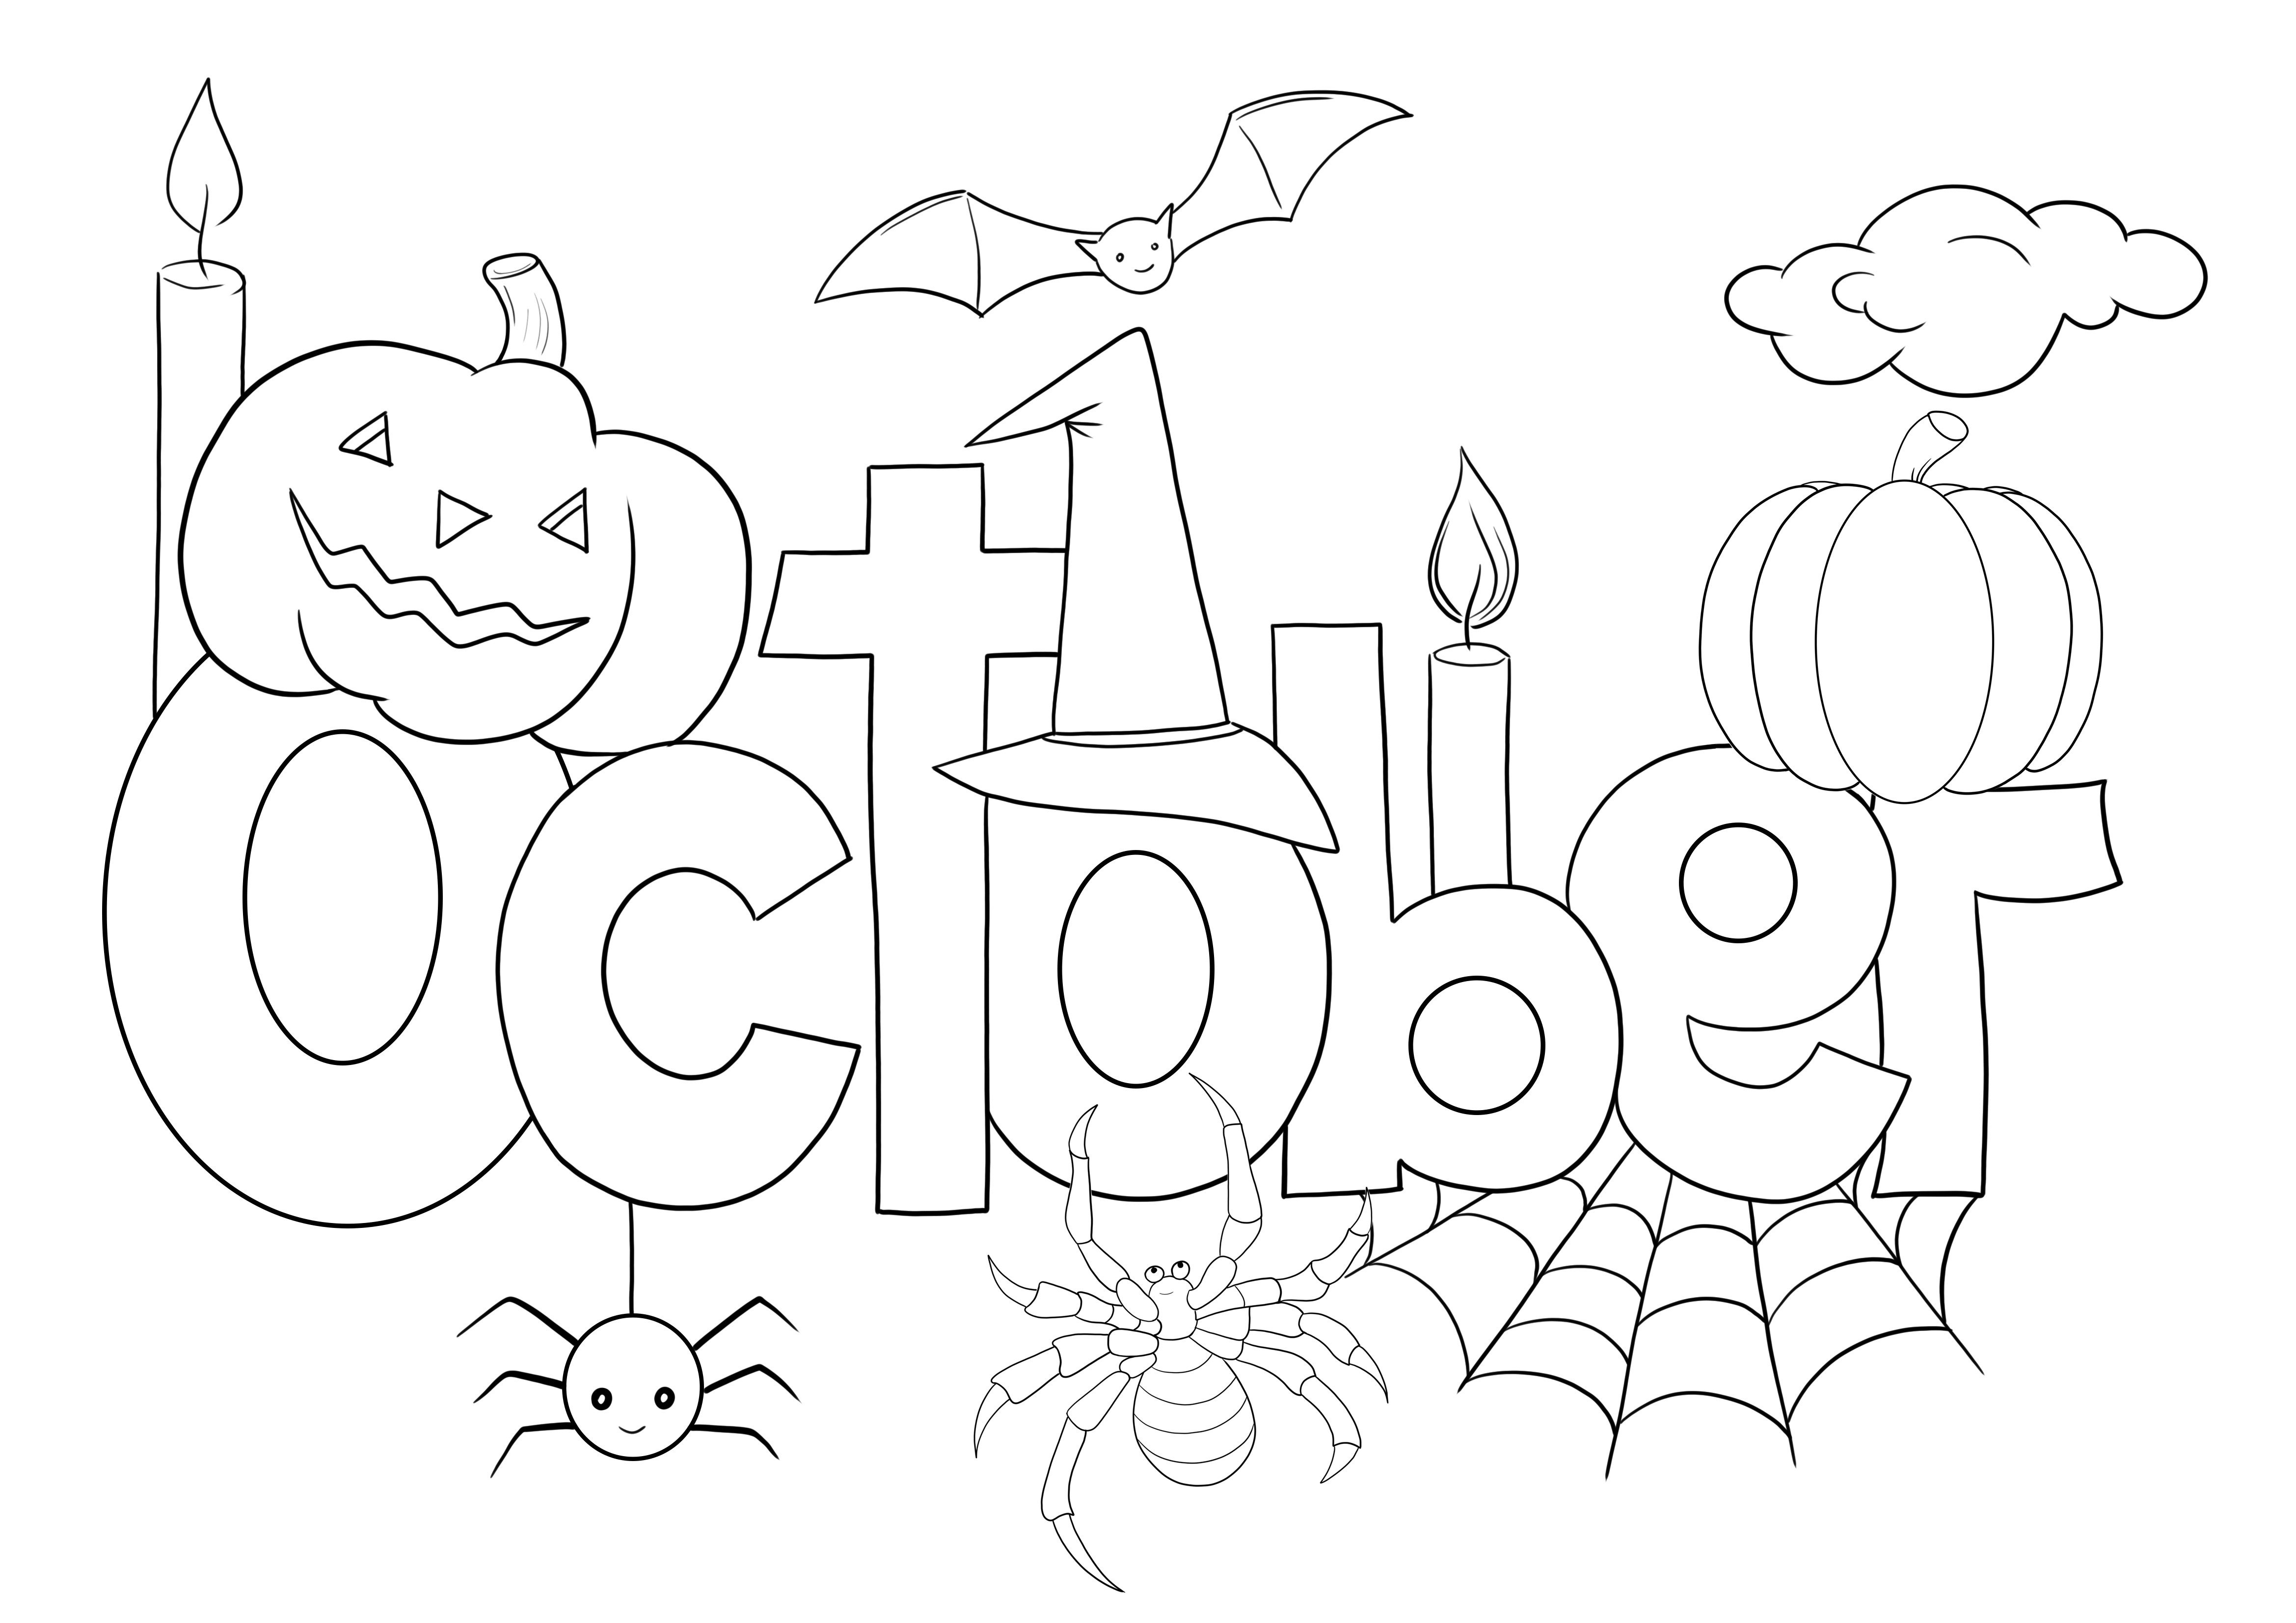 Dibujo para colorear de octubre gratis para descargar y colorear.